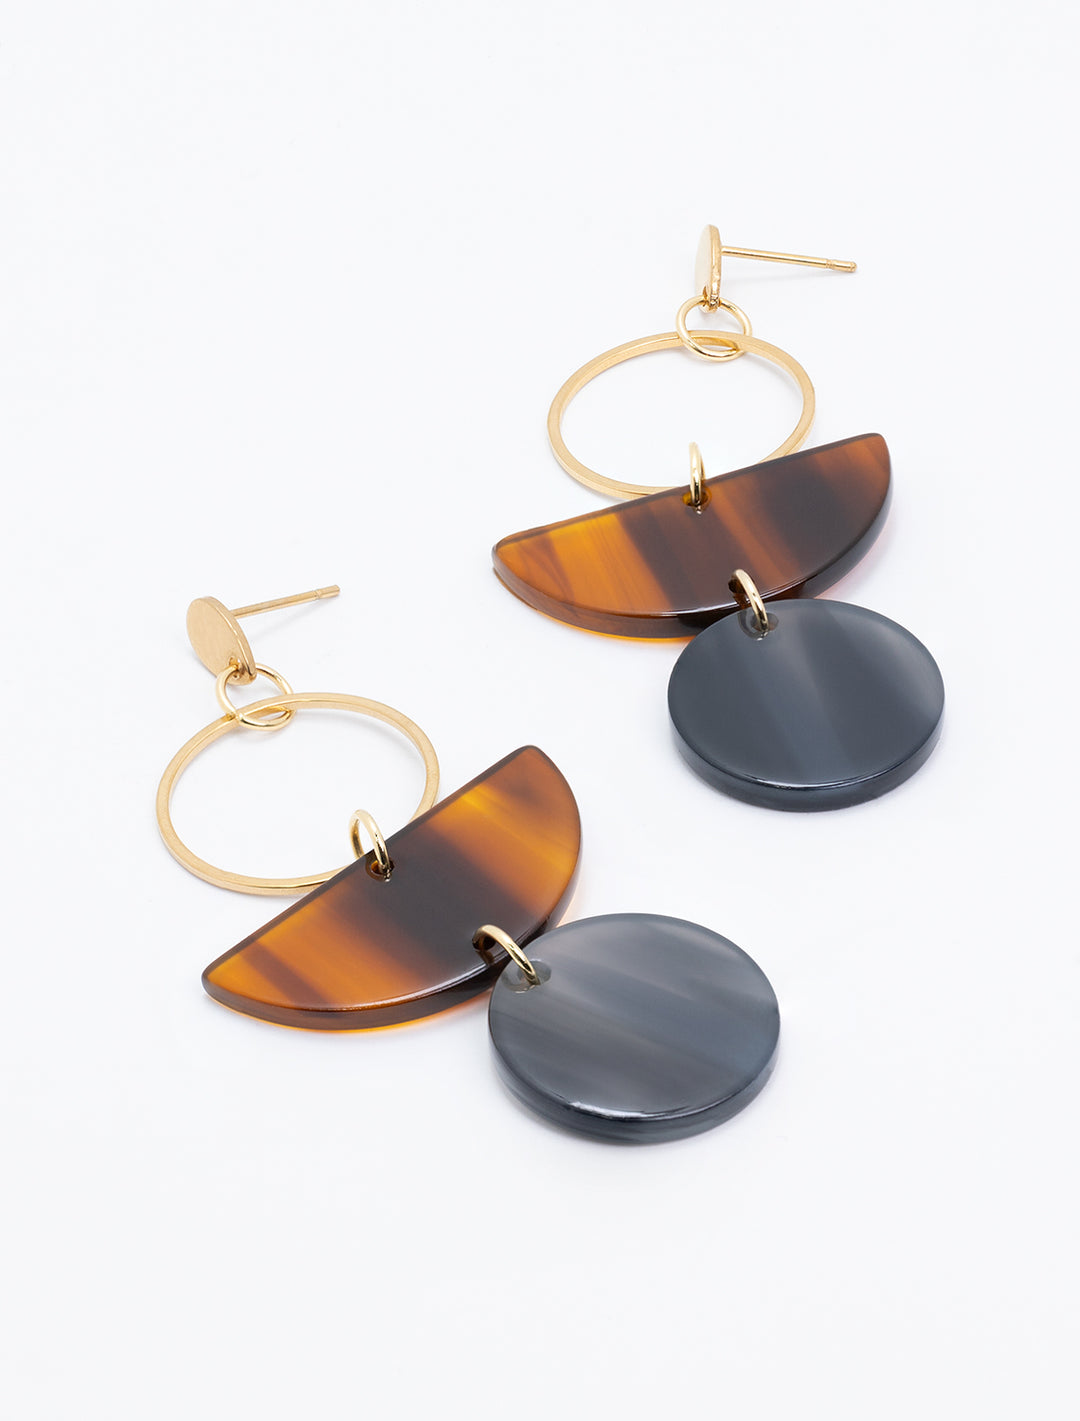 Laydown of S&S's wren earrings in walnut and black.